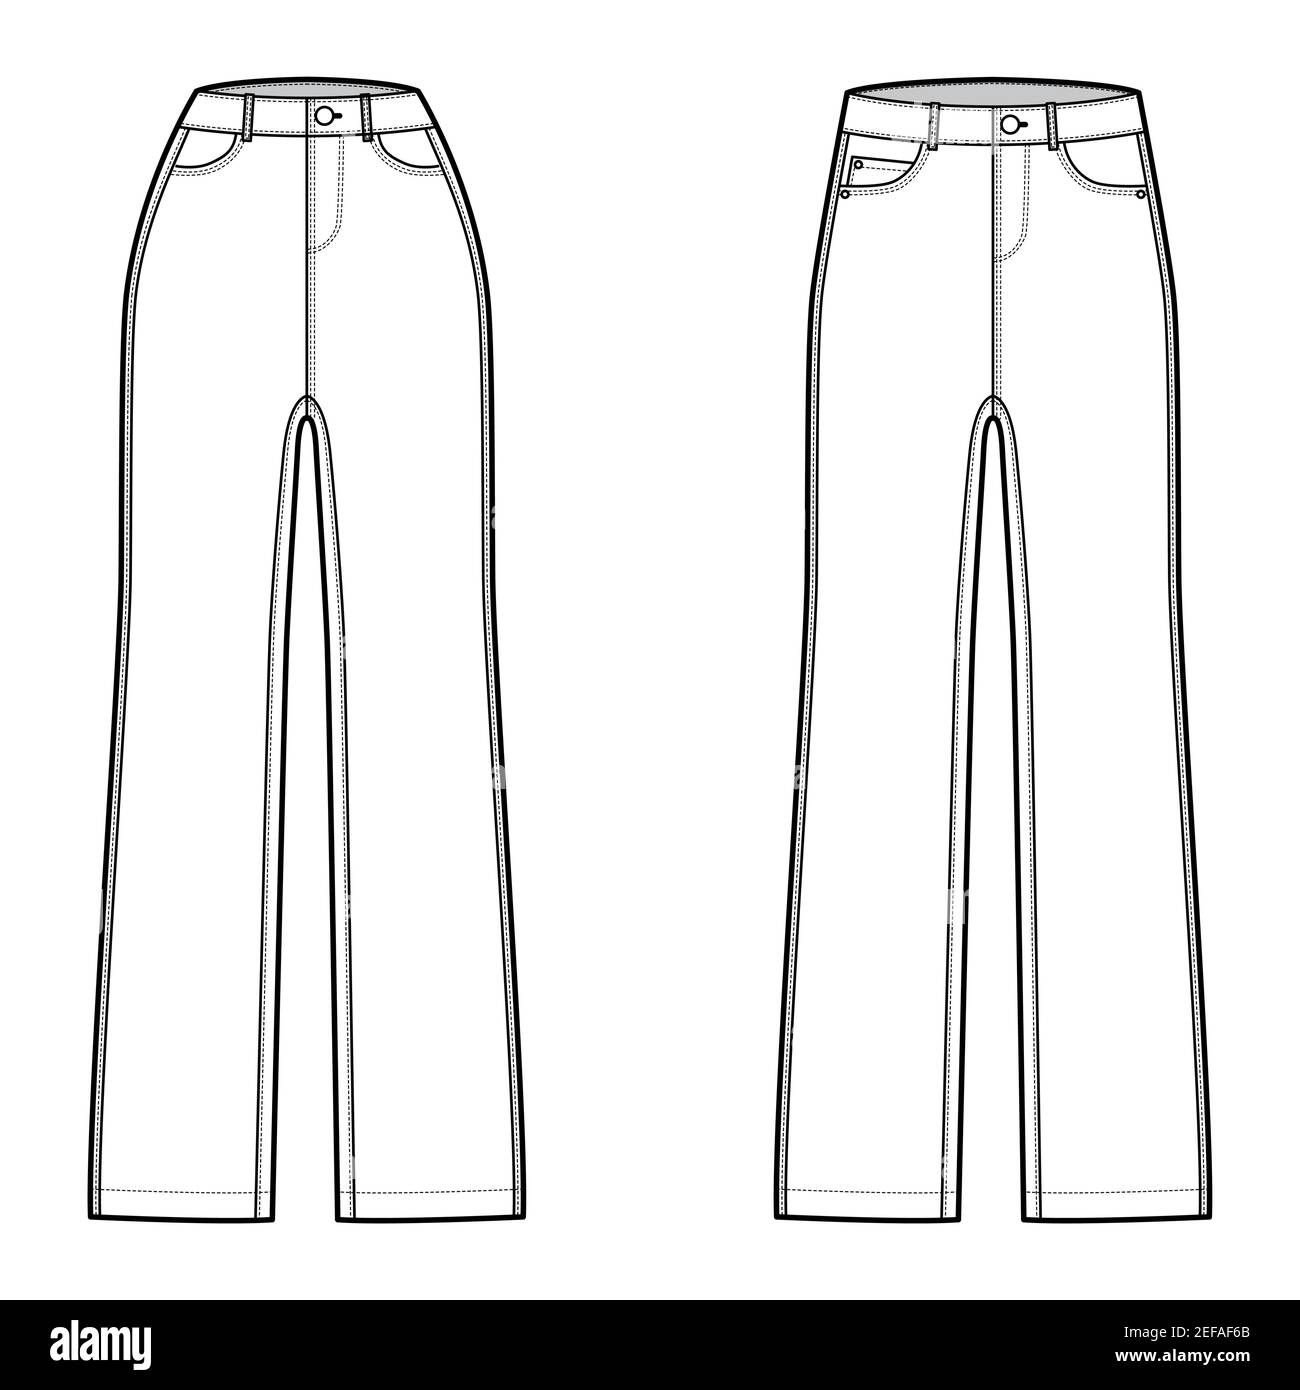 Conjunto de jeans pantalones vaqueros ilustración técnica de moda con longitud completa, cintura baja normal, talle alto, 5 remaches. Plantilla de fondo plano frontal, estilo de color hombres, unisex